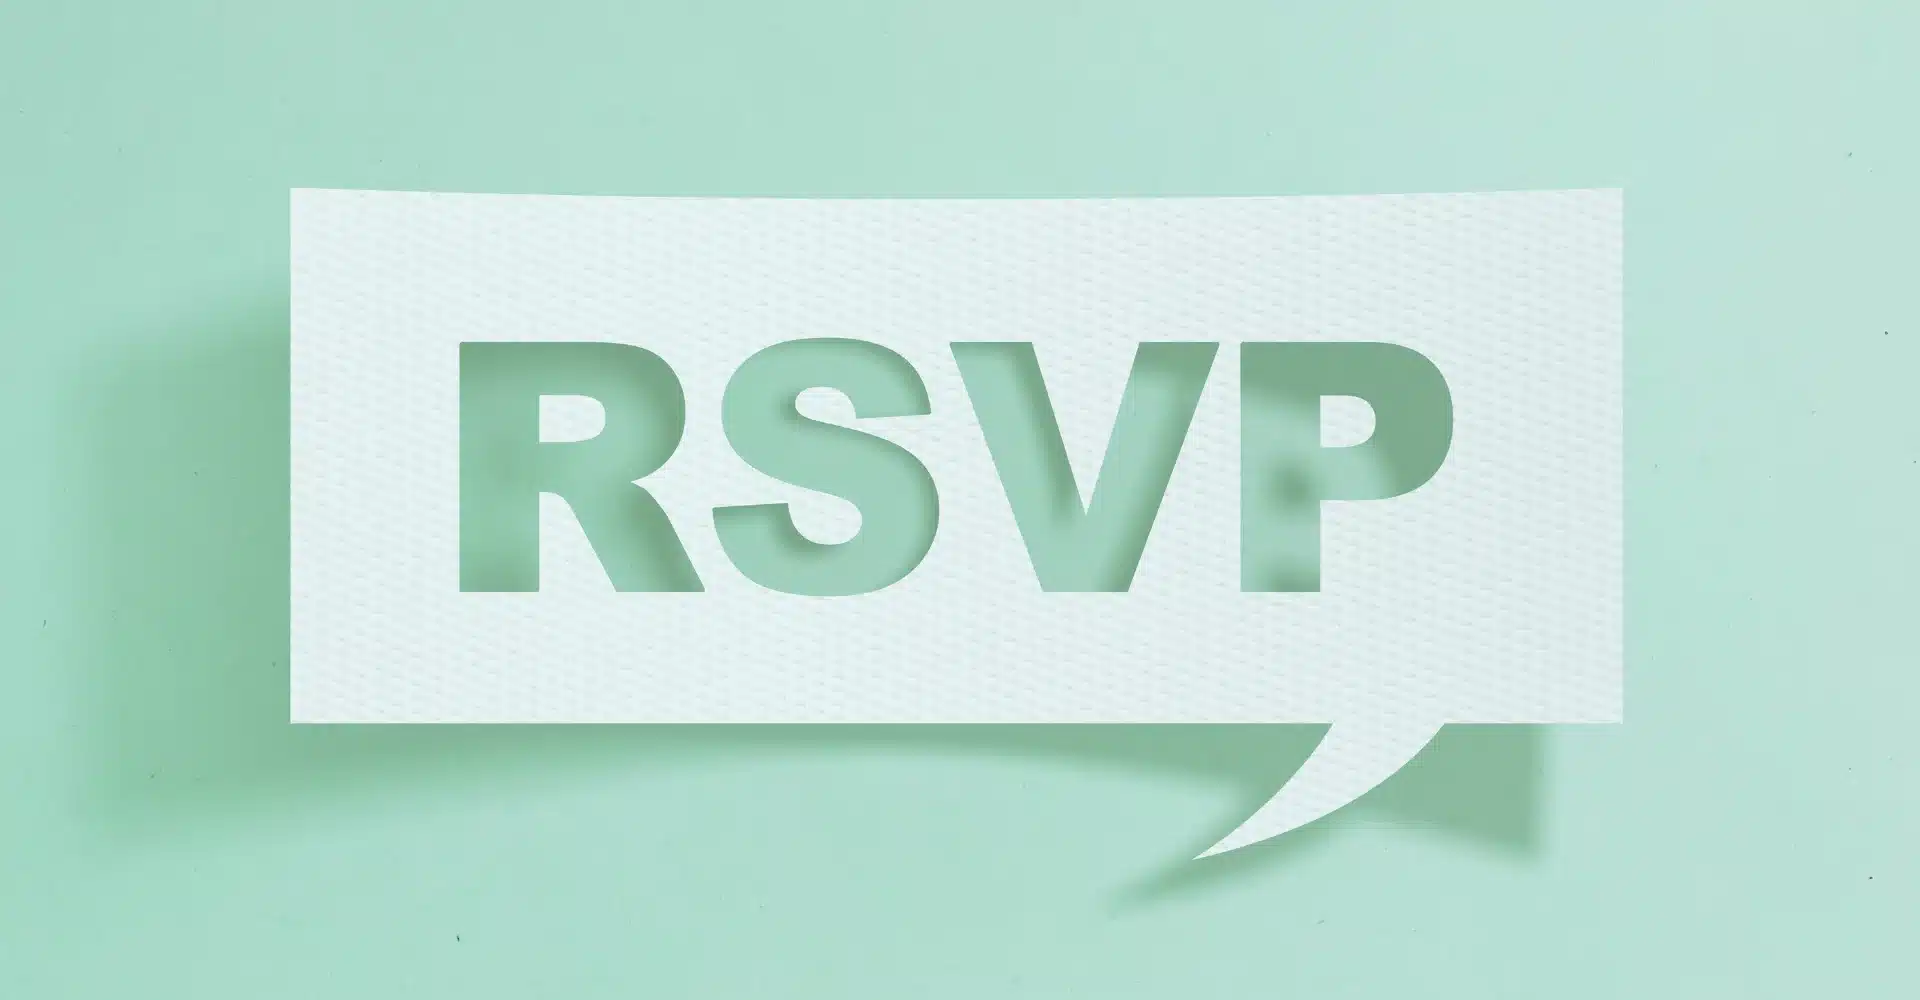 RSVP inscription évènements bonnes pratiques planifier anticiper